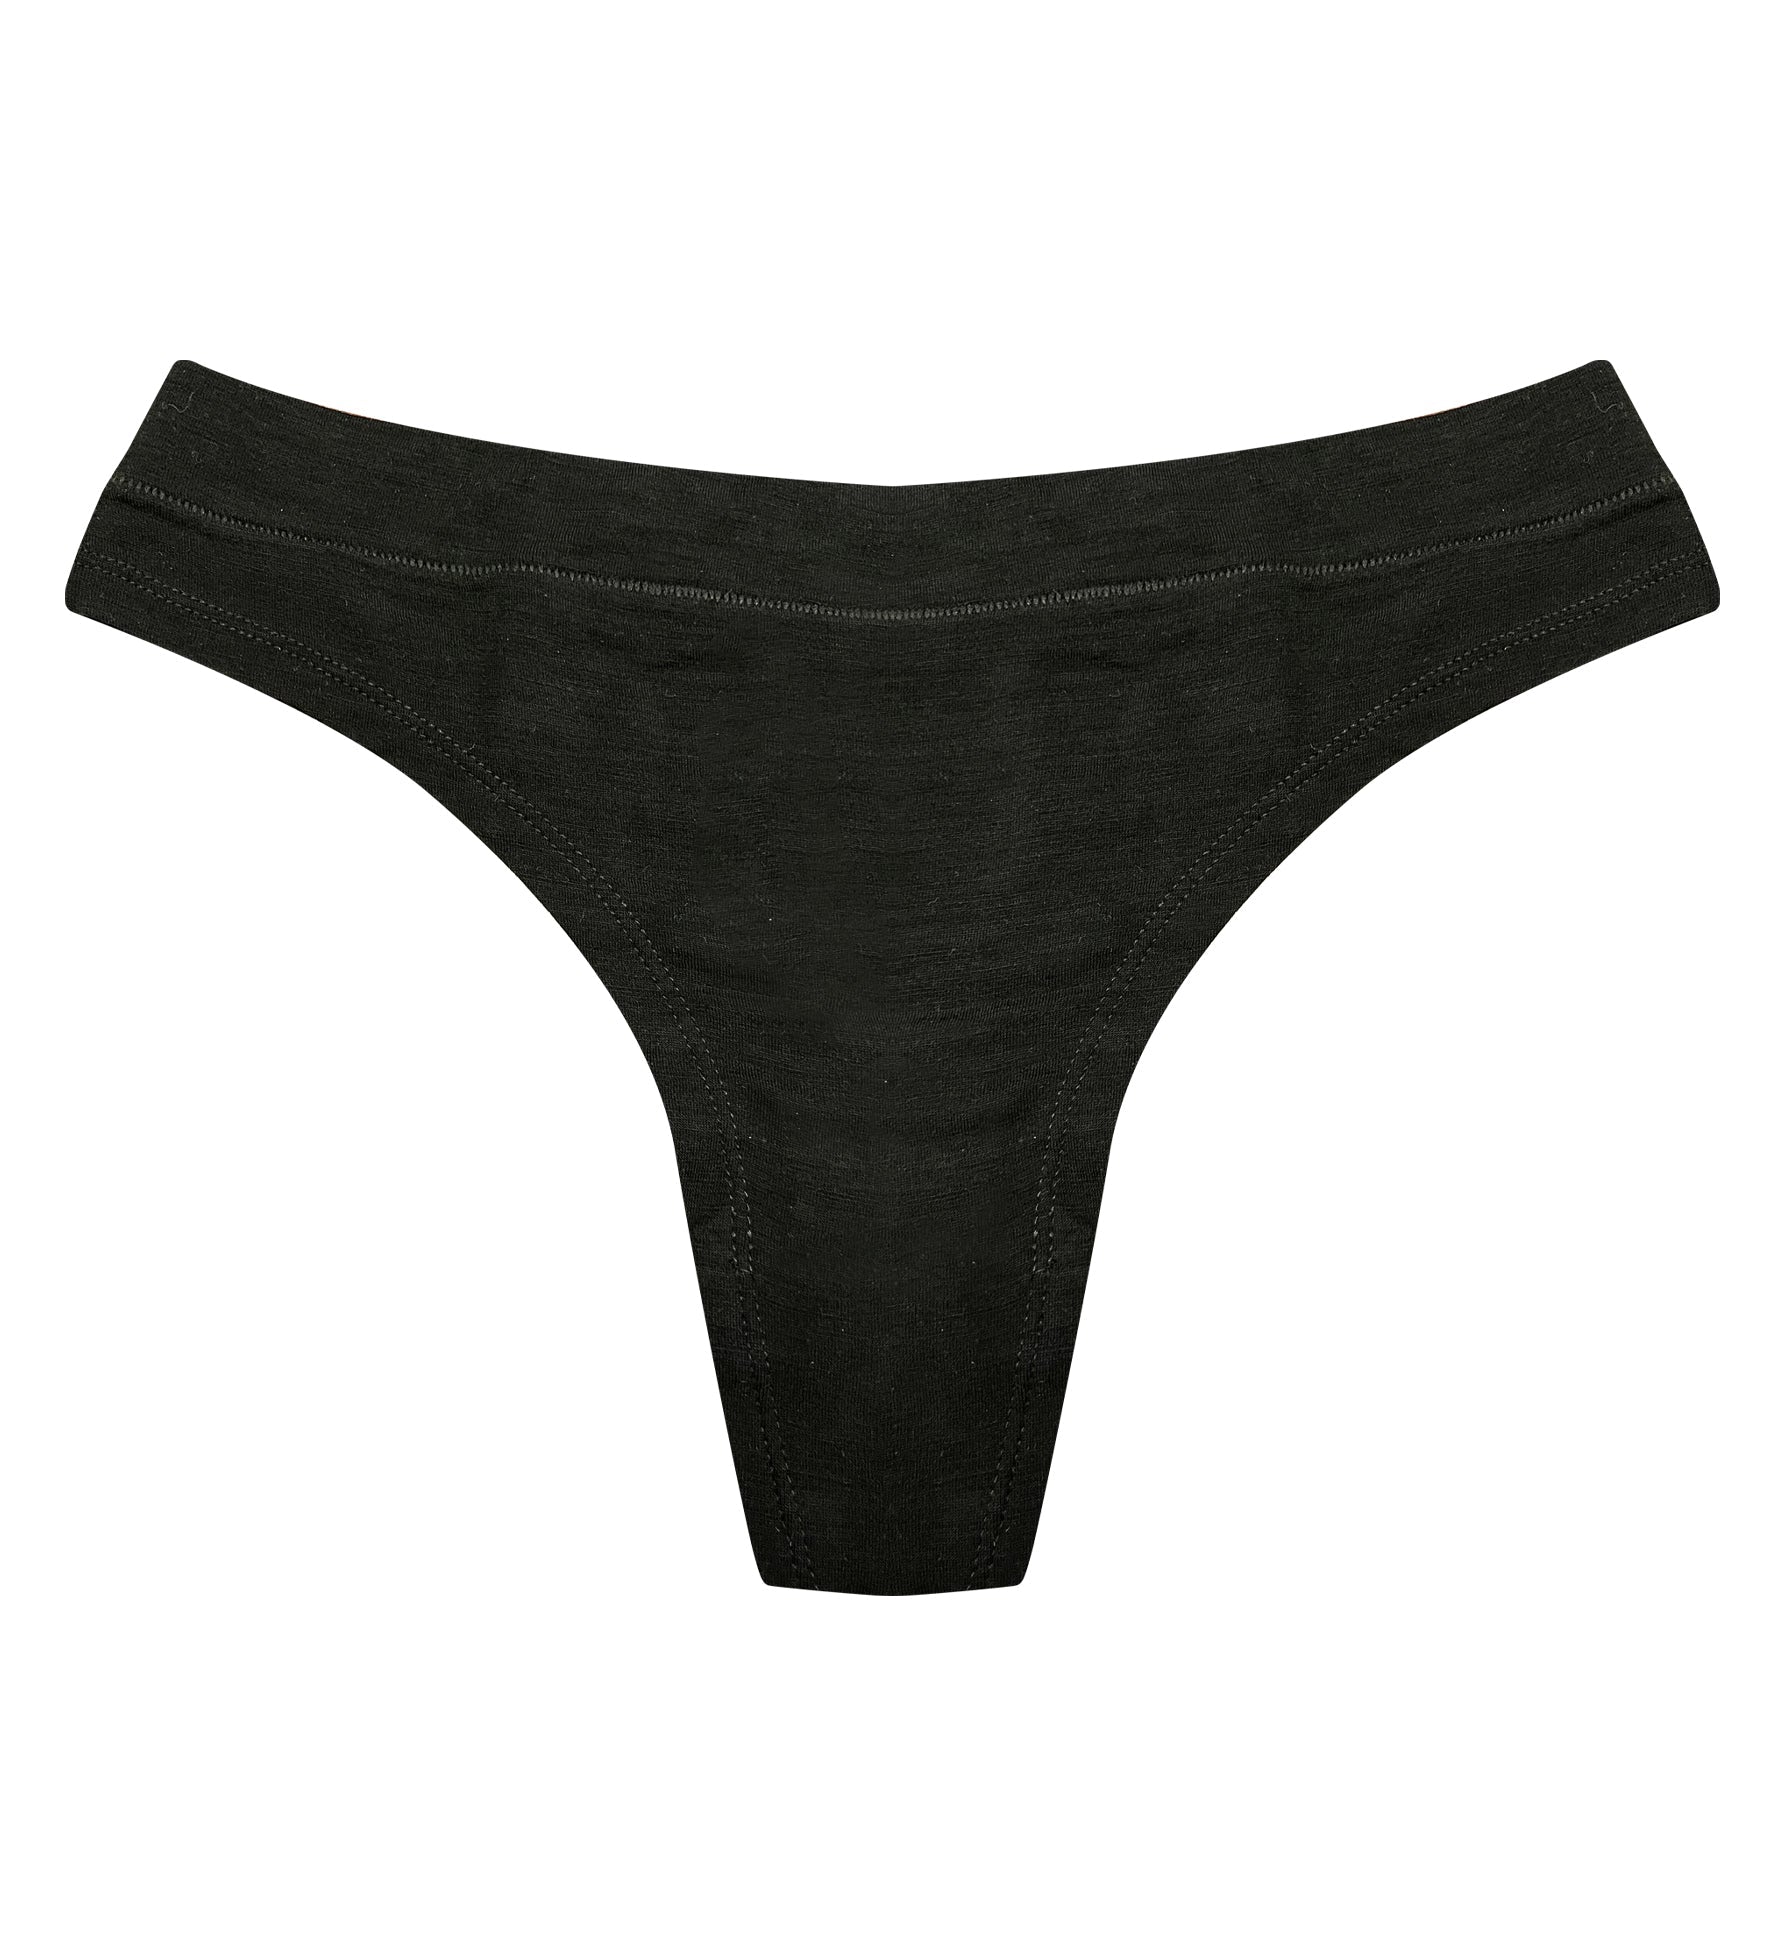 Merino wool women's underwear brief